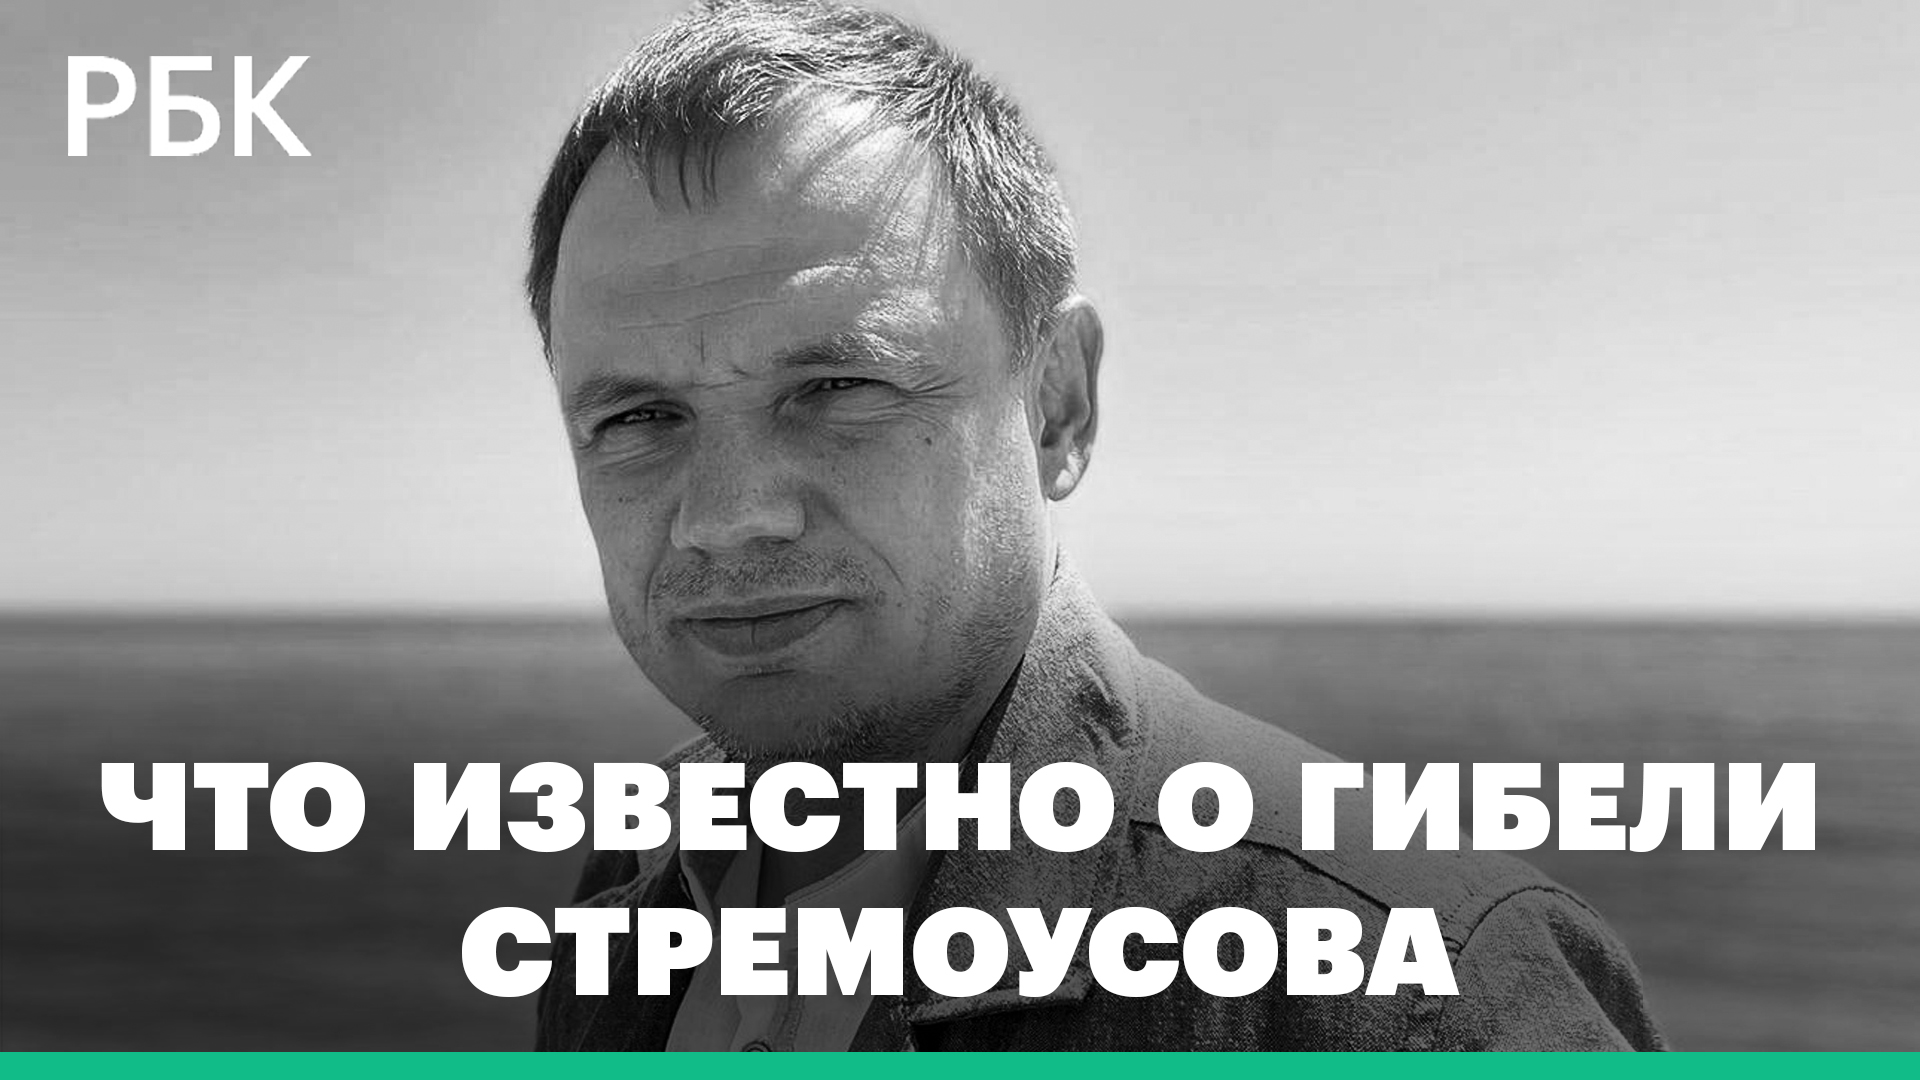 Заместитель главы Херсонской области Кирилл Стремоусов погиб в аварии